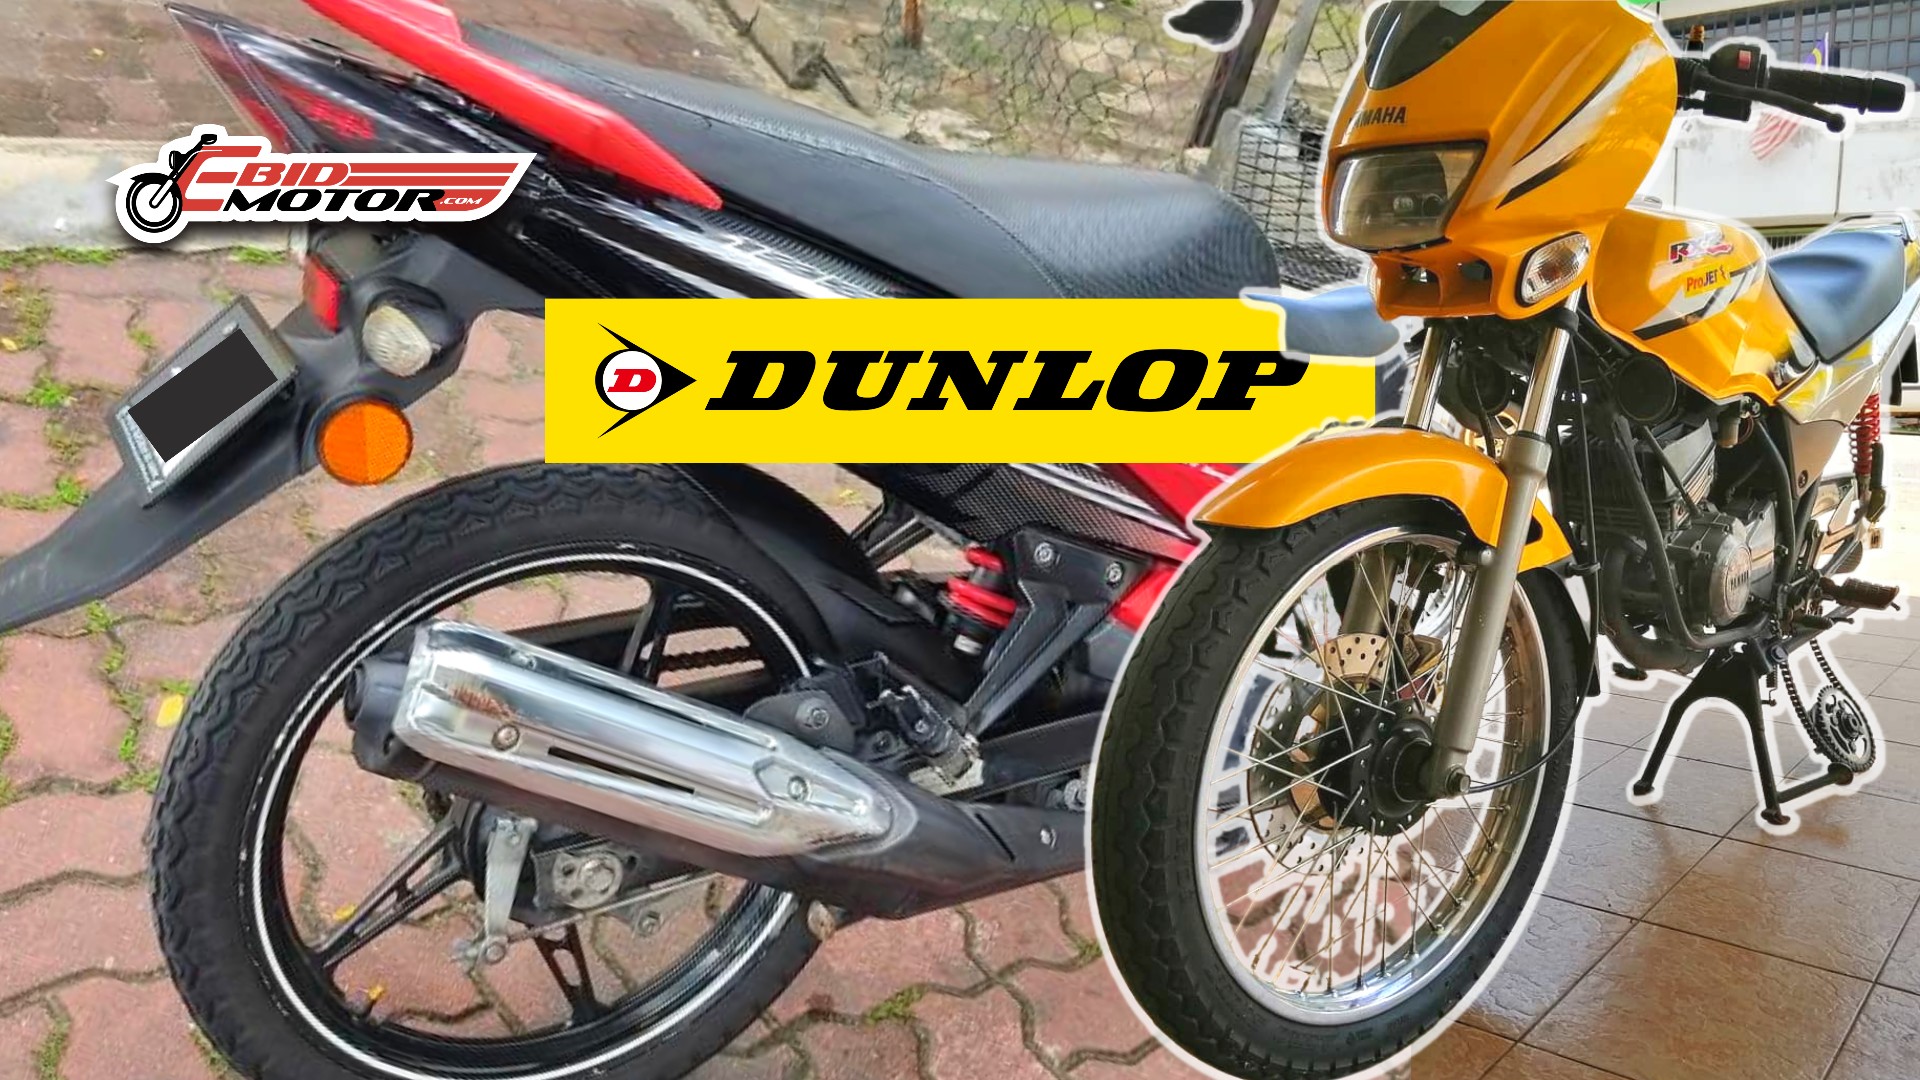 Review: Betul Ke Tayar Dunlop TT100 Paling TERBAIK Untuk Daily Ride?